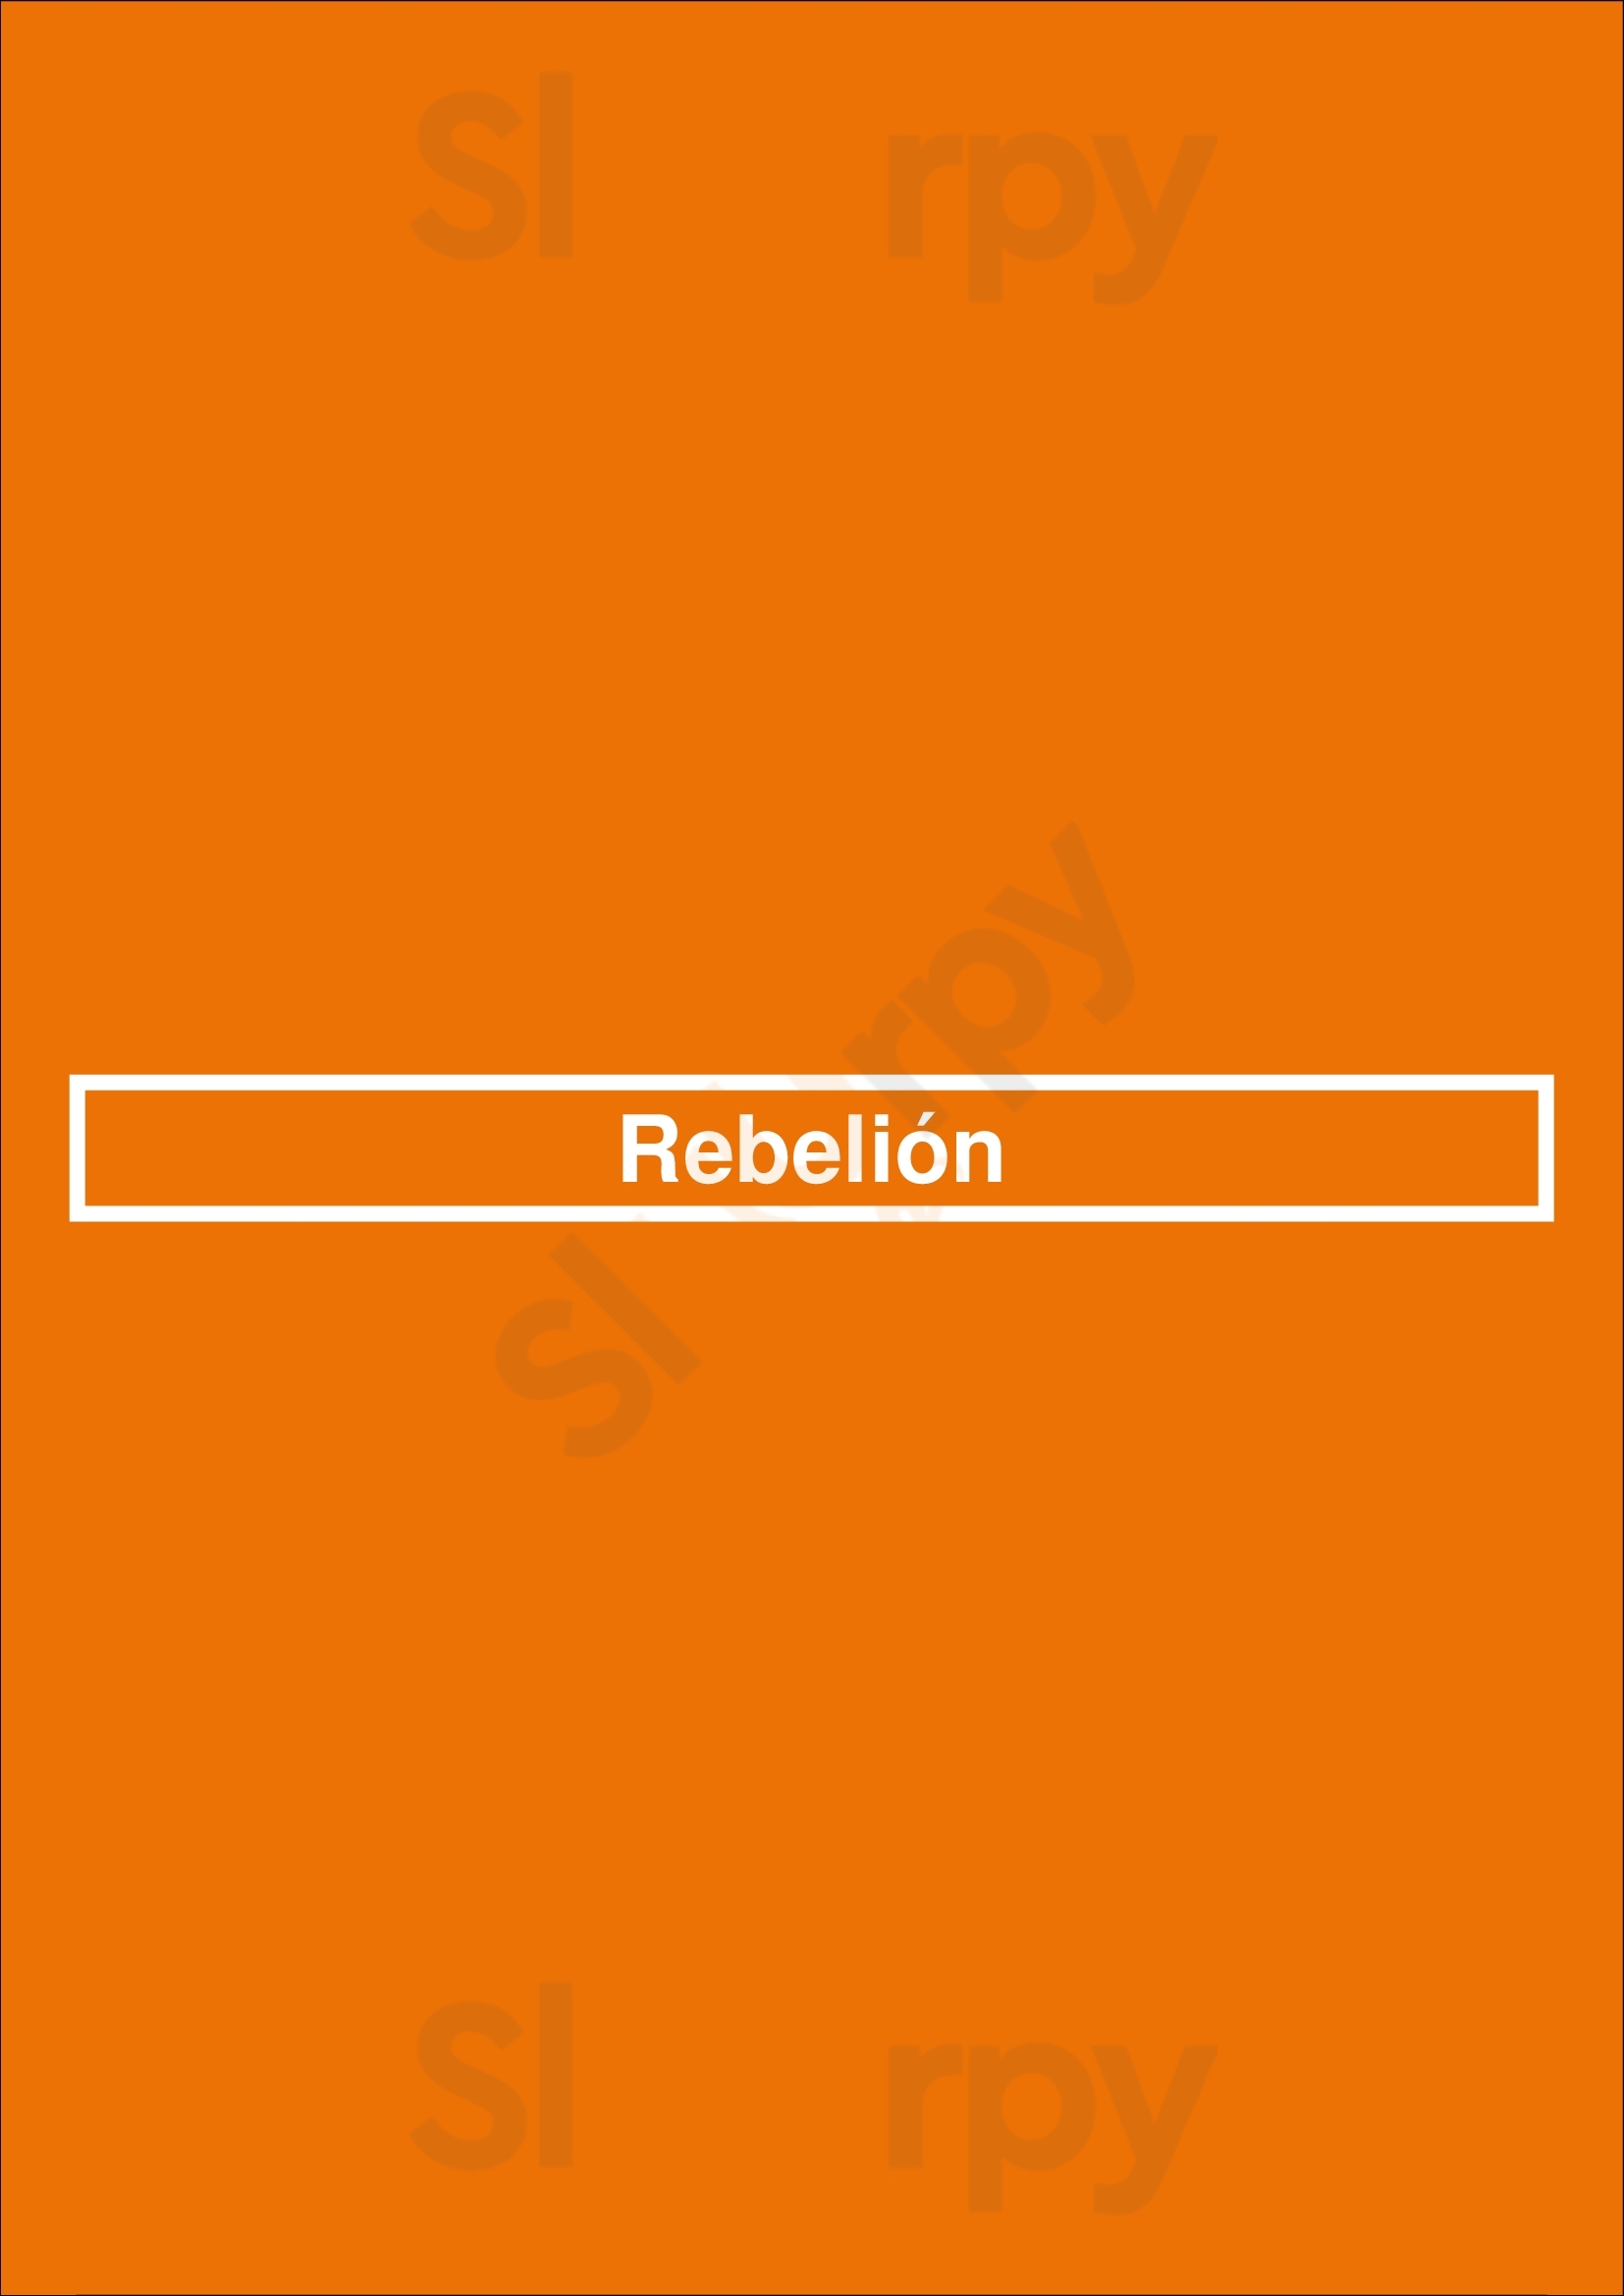 Rebelión Buenos Aires Menu - 1